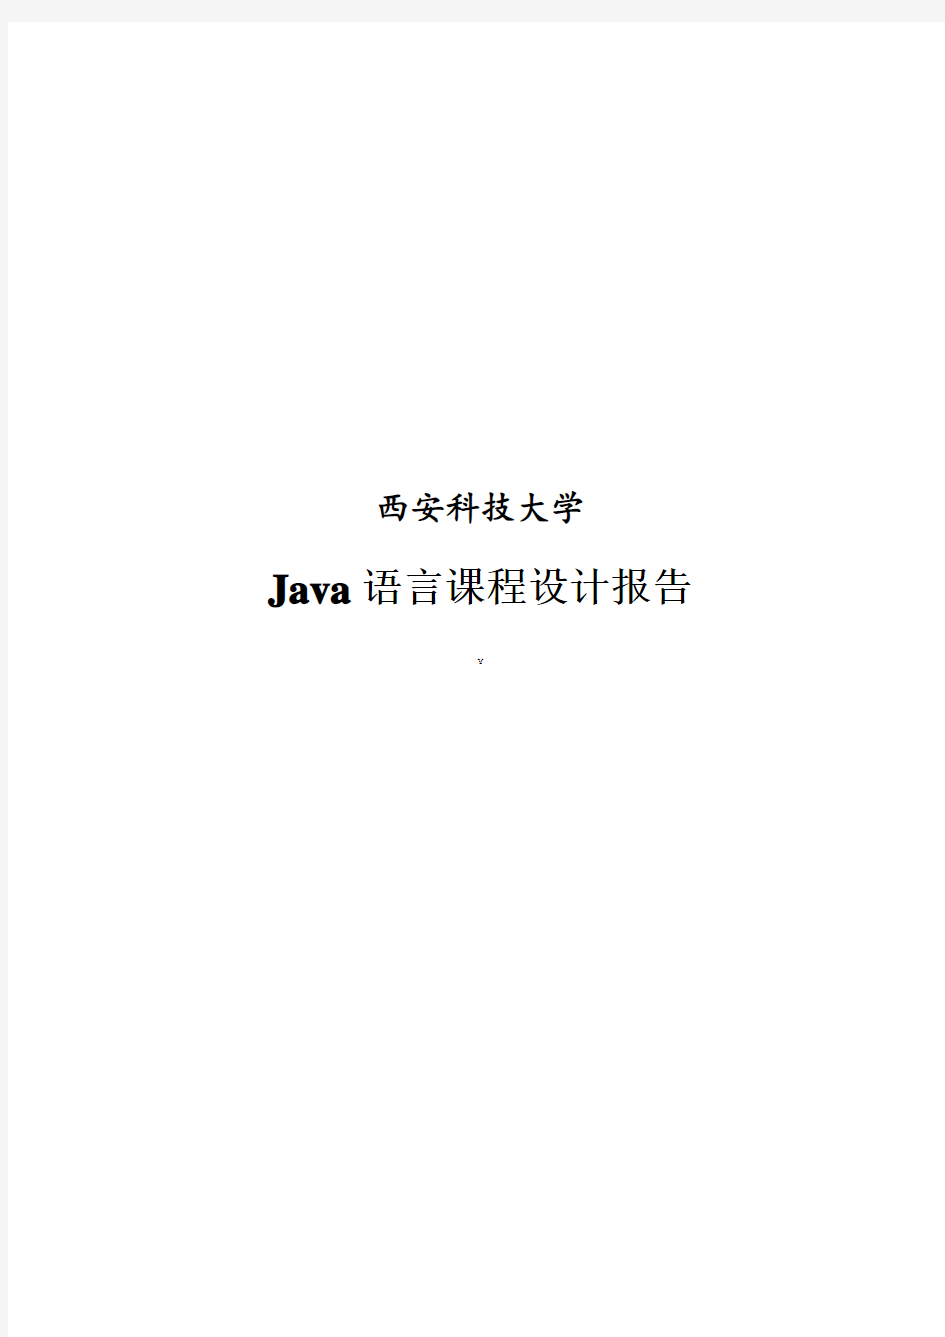 Java画图板程序设计报告